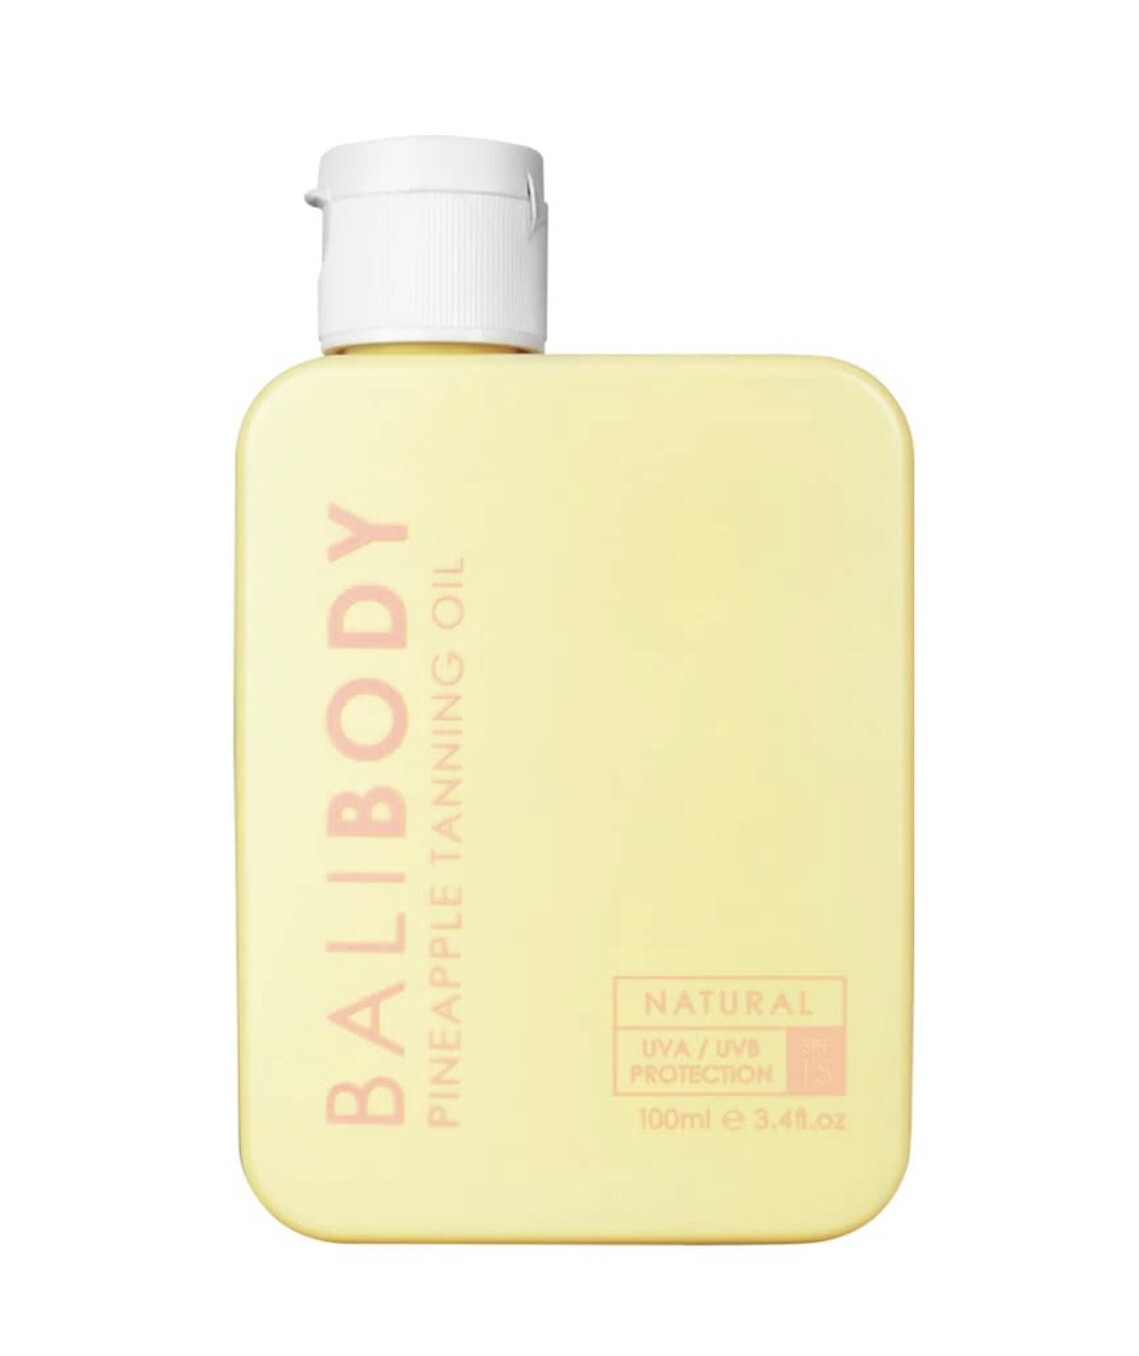 BALI BODY - Pineapple Tanning Oil SPF15